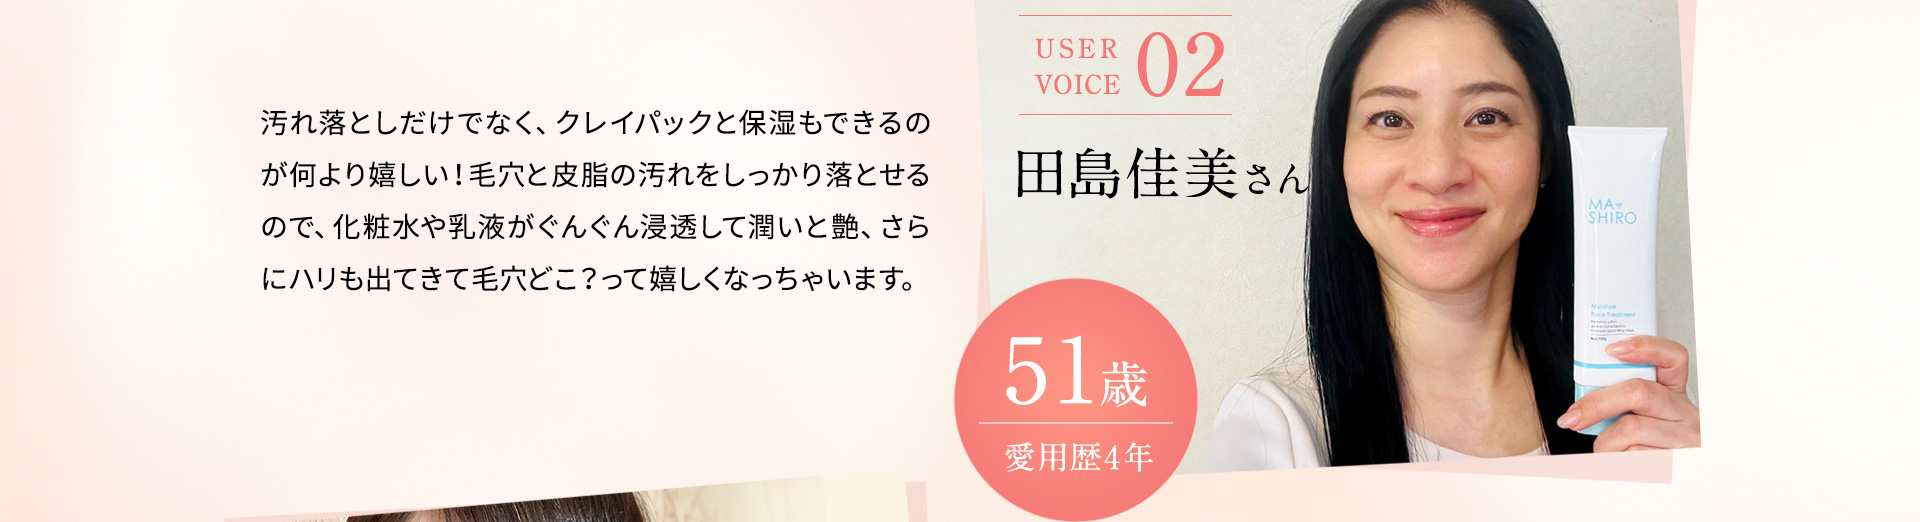 voice02:田島佳美さん51歳